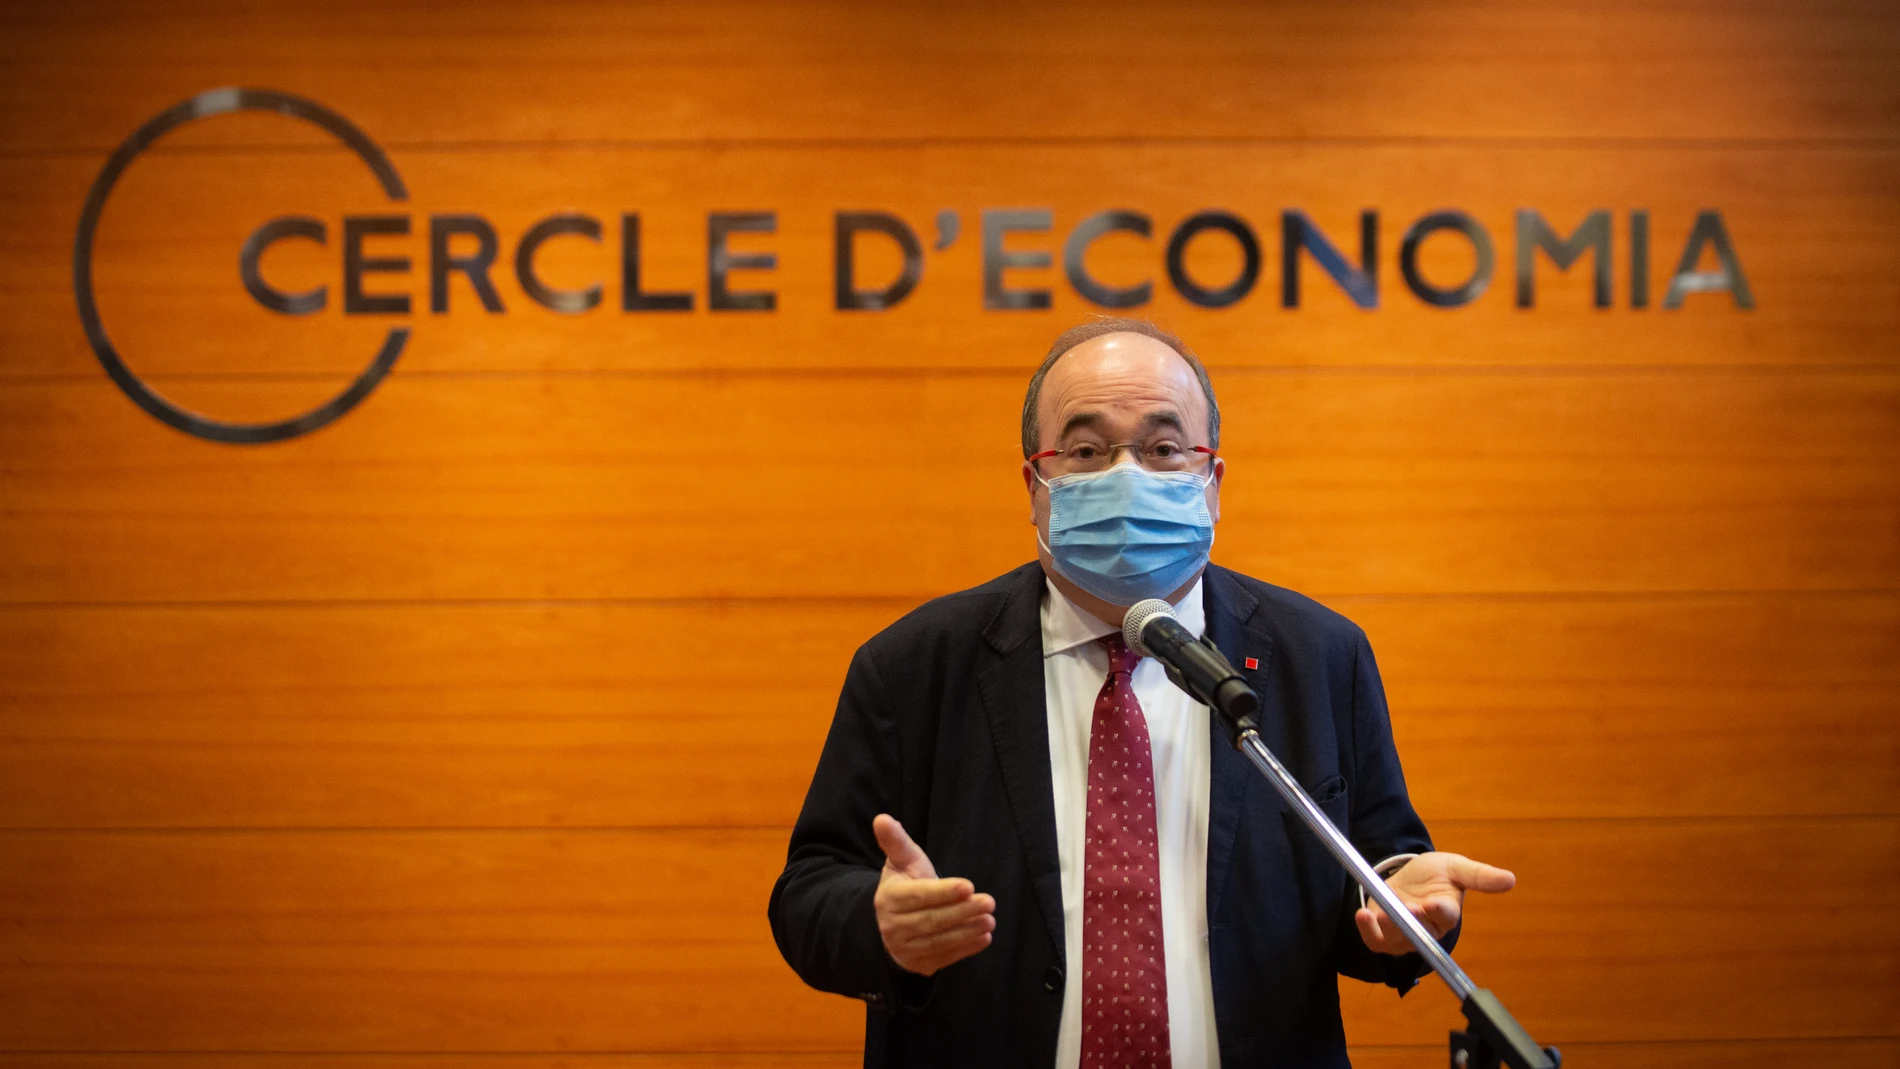 El primer secretario del PSC, Miquel Iceta, interviene hoy en un encuentro sobre "El papel del sector público en el relanzamiento de la productividad" organizado por el Círculo de Economía, en Barcelona